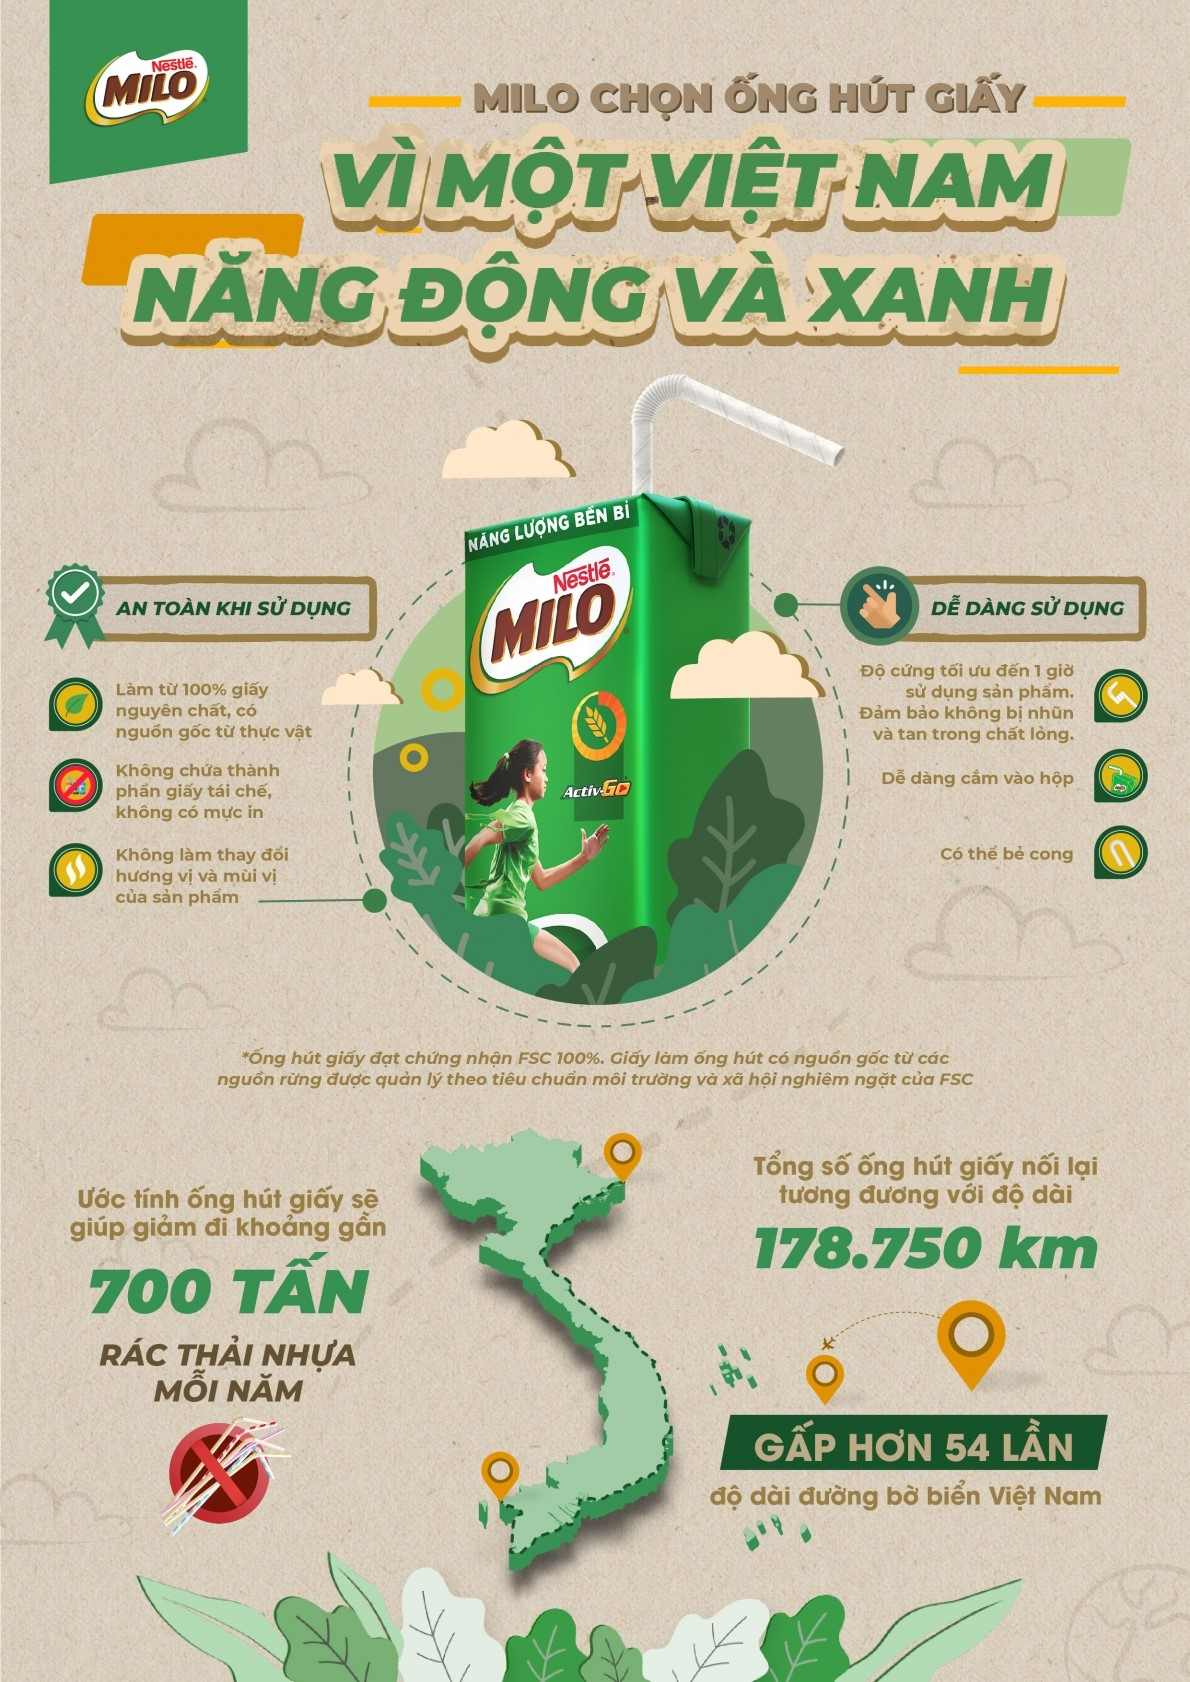 Nestlé MILO hưởng ứng chiến dịch “Nói không với ống hút nhựa” được phát động bởi Bộ Tài nguyên và Môi trường.